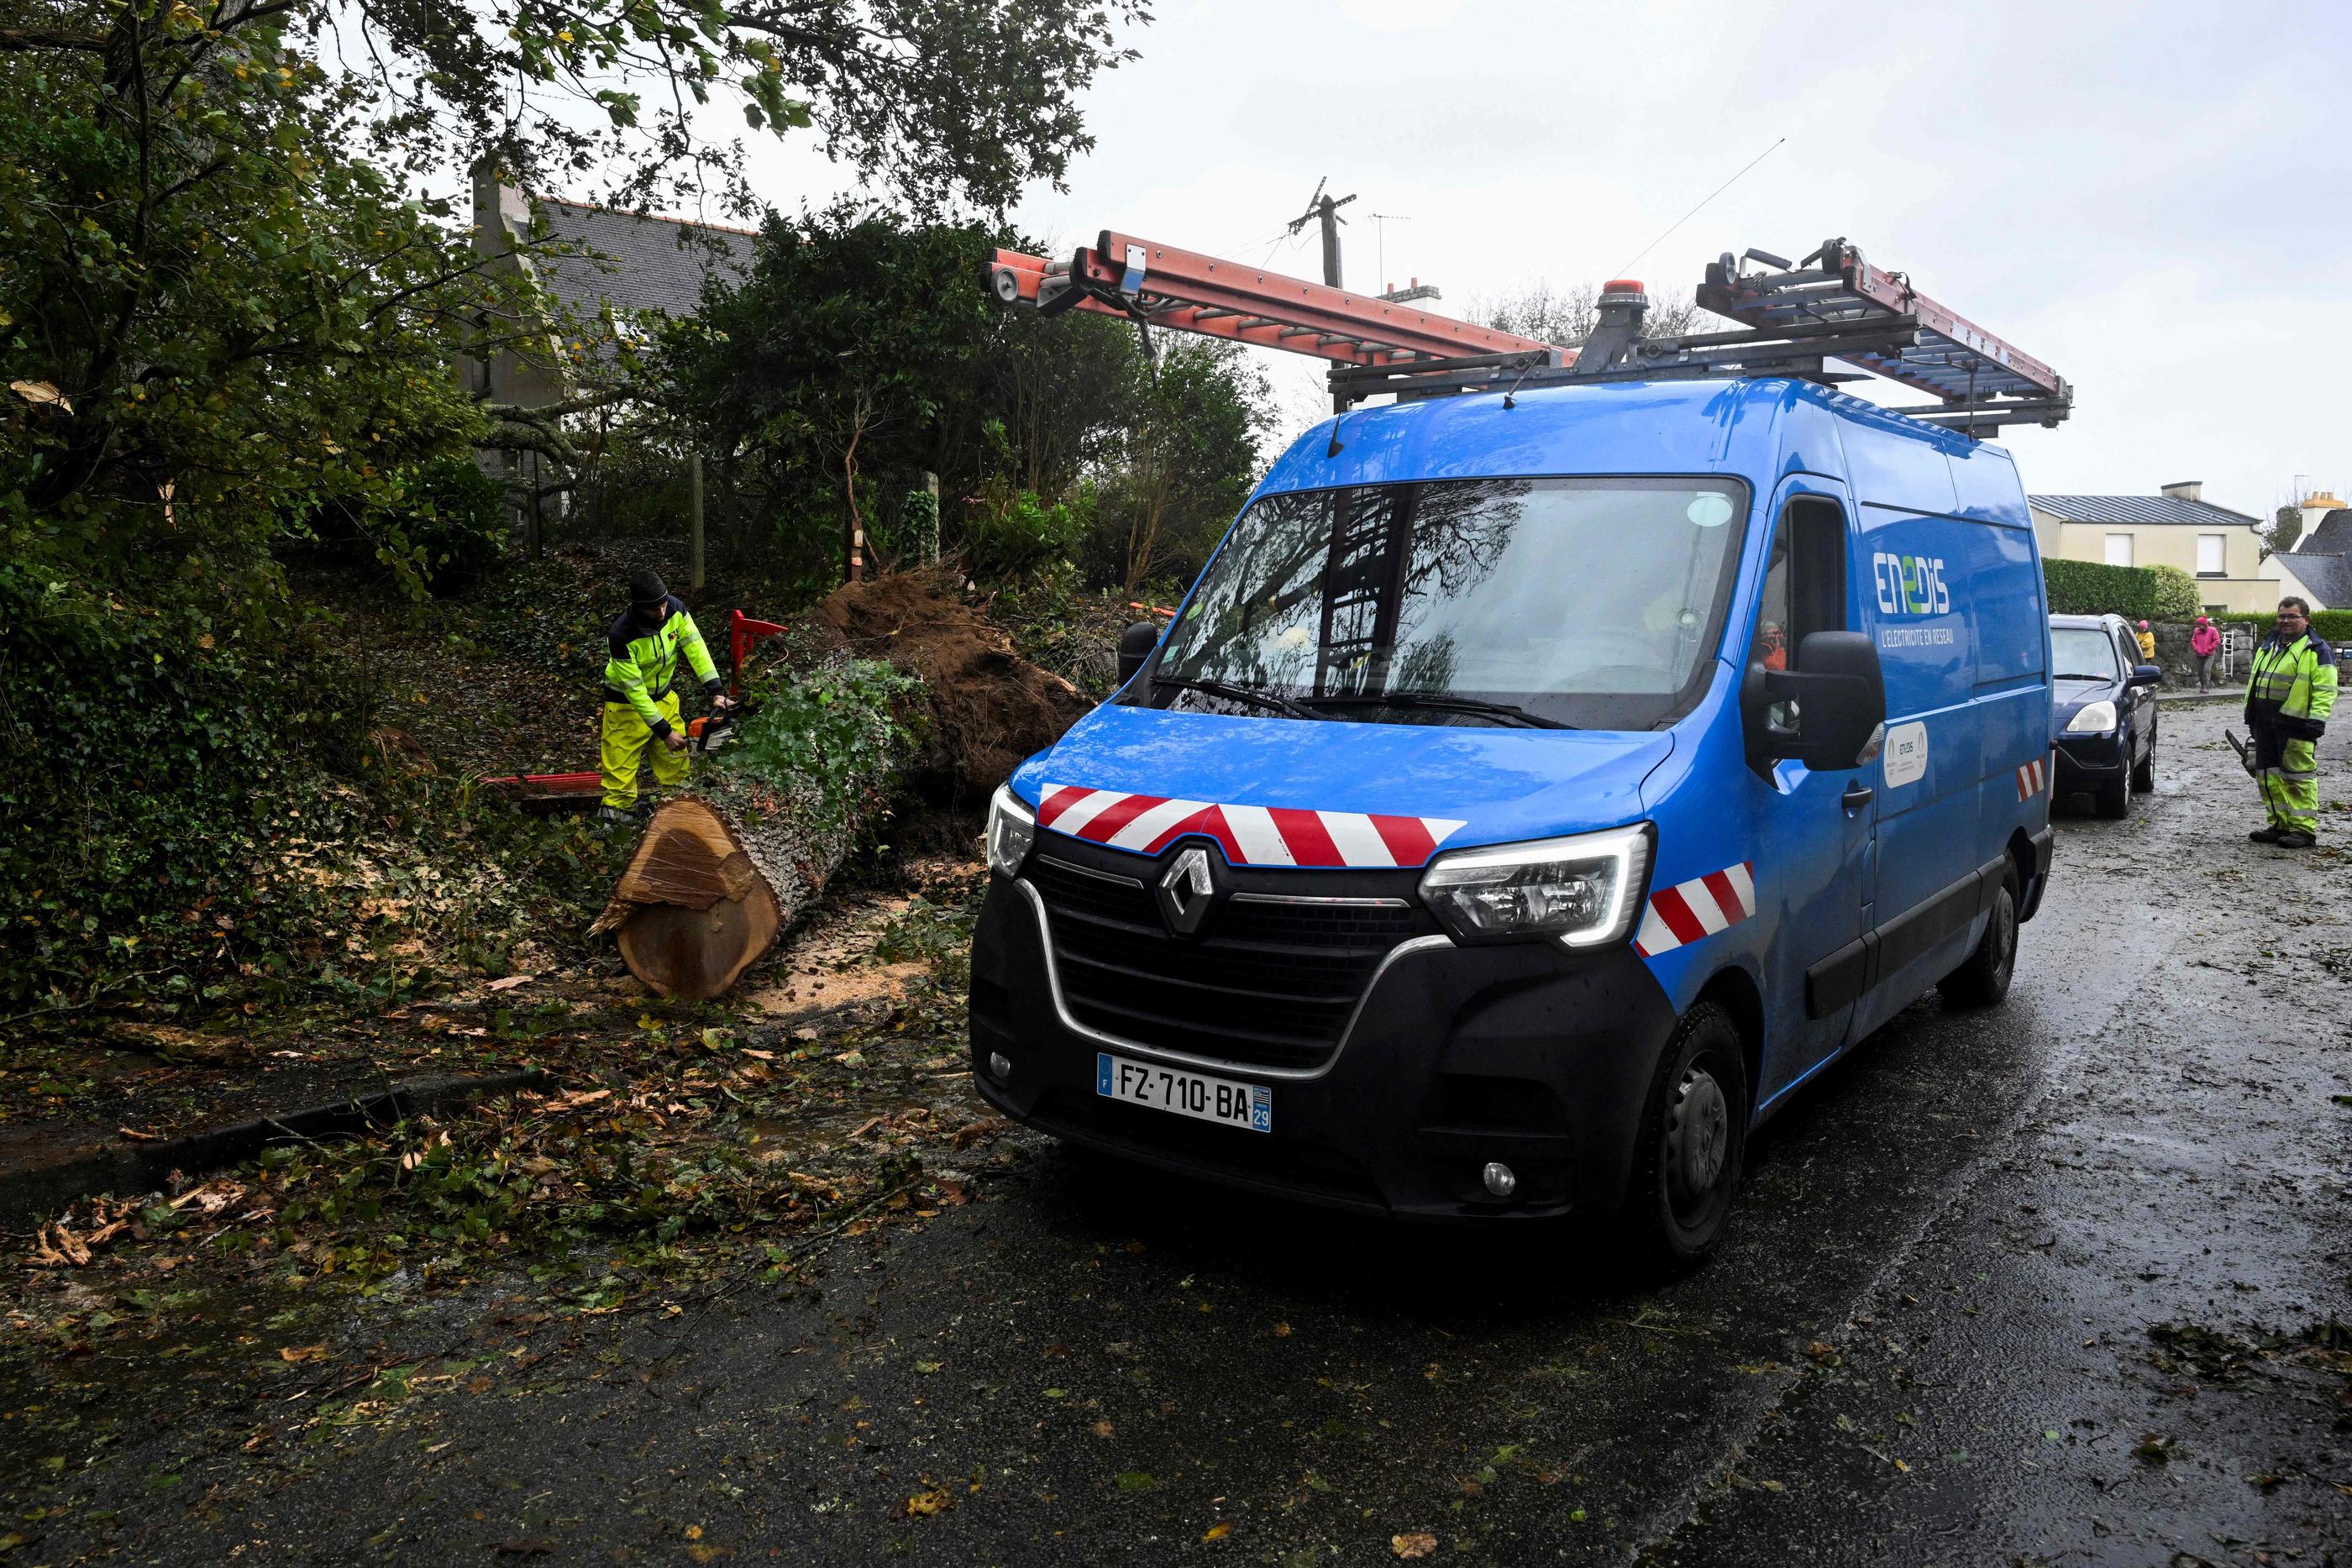 Plus de 250 000 foyers étaient toujours privés d'électricité samedi midi après le passage de la tempête Ciaran. AFP / Damien Meyer